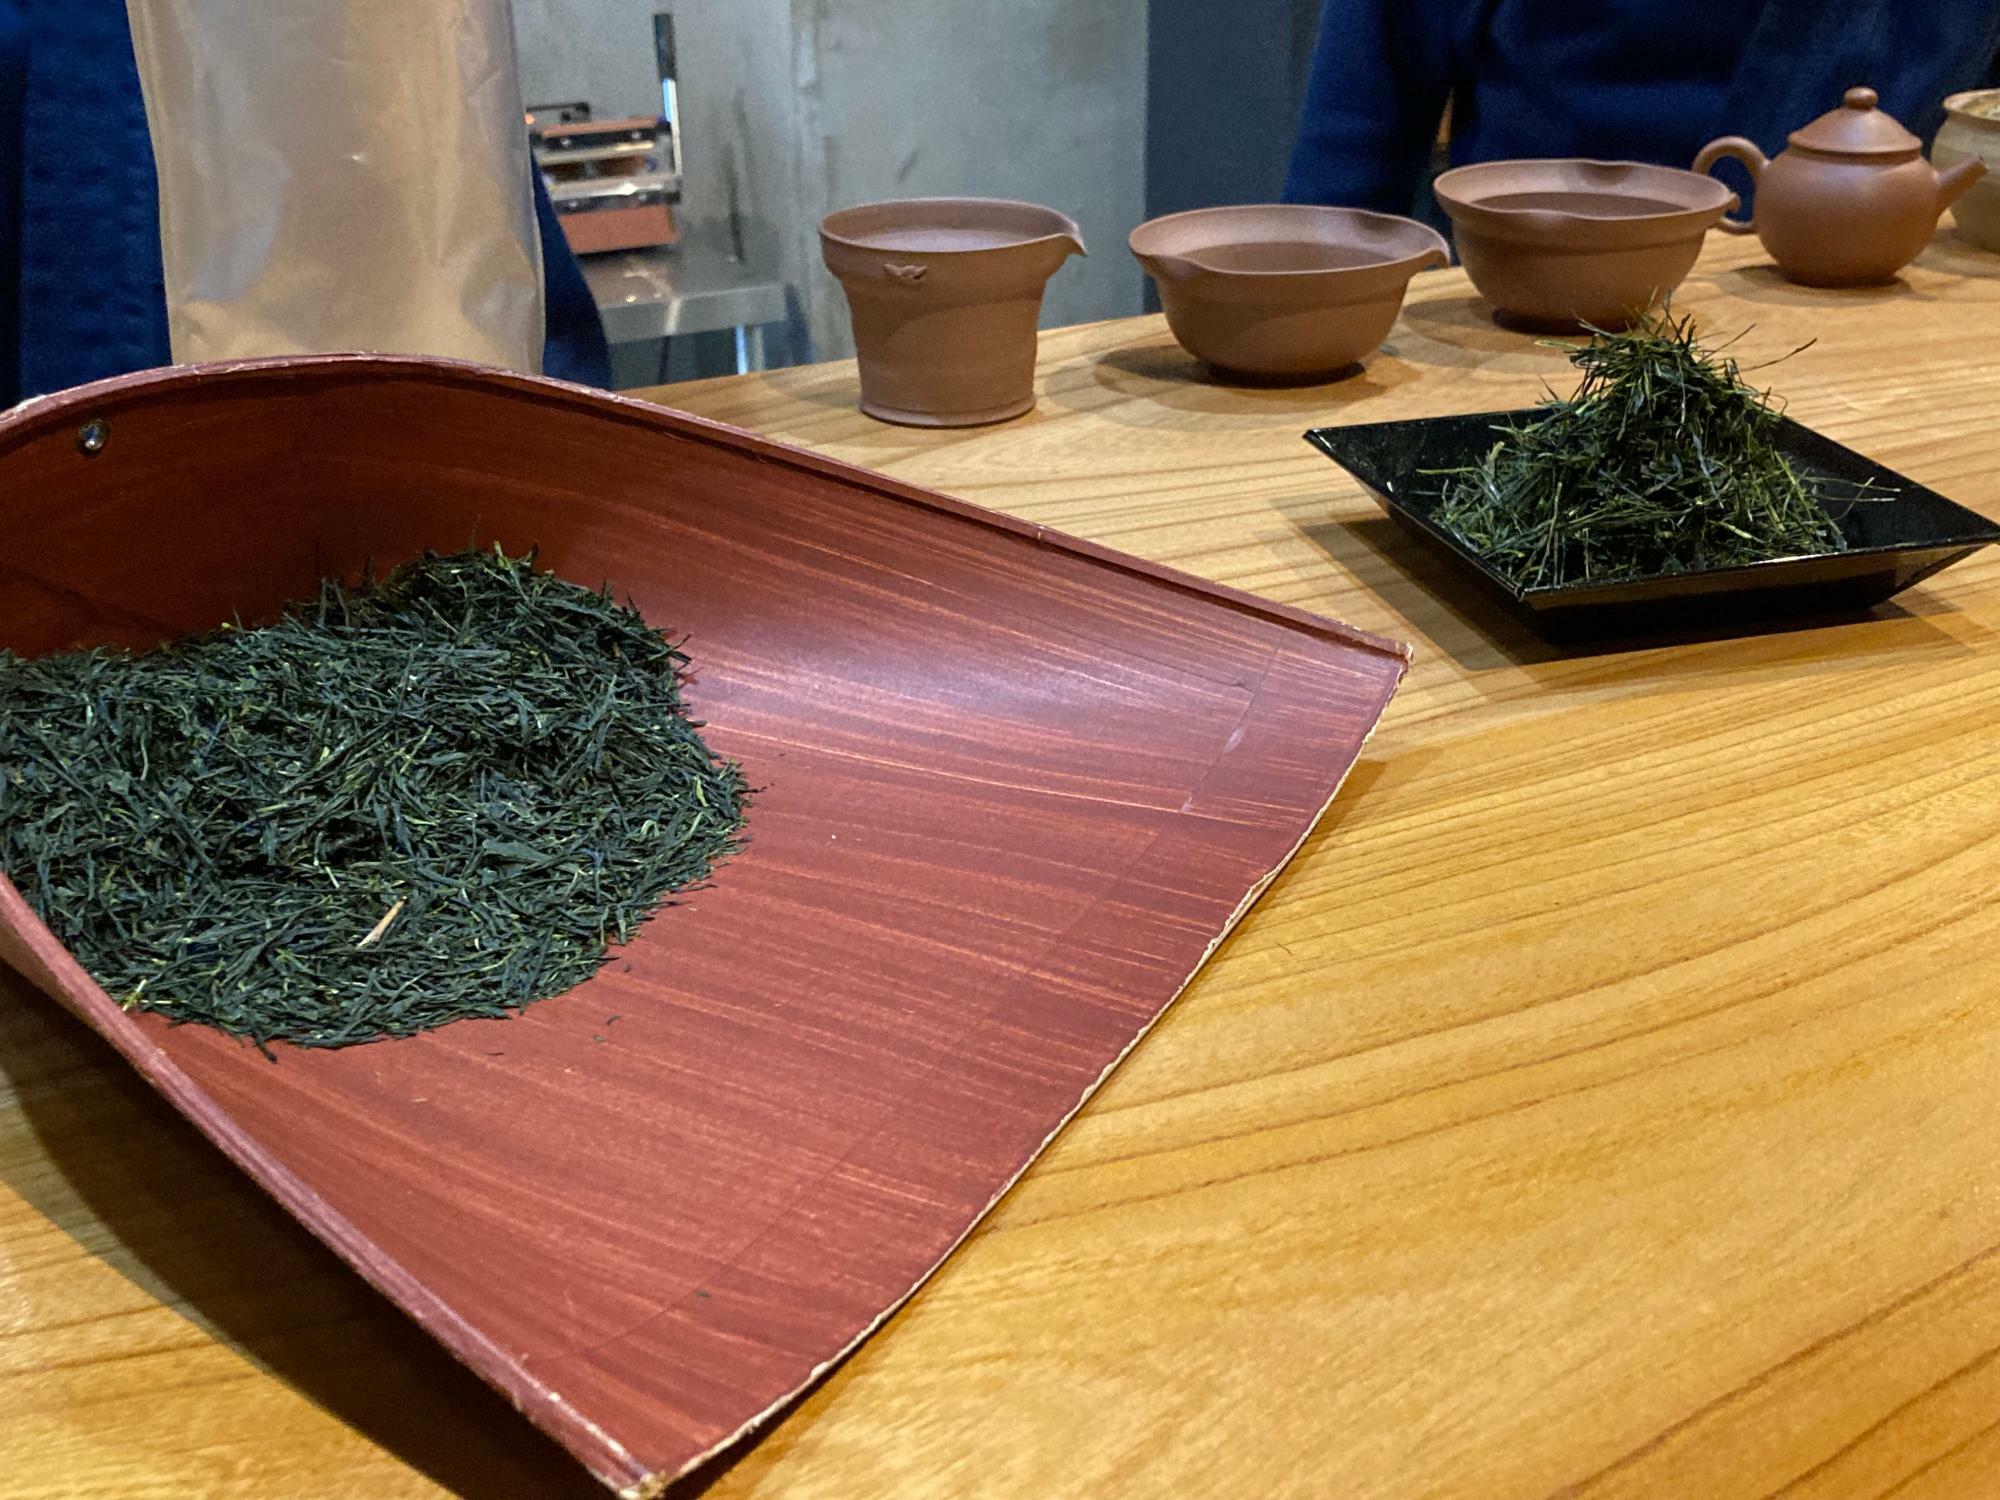 左が今回の研修で作った揉みたての煎茶。品種は「さやまかおり」。奥の手揉み茶と比べると葉の形状がもっと細かくなっていますが、一般的な煎茶よりは葉はしっかりとした形状を留めています。